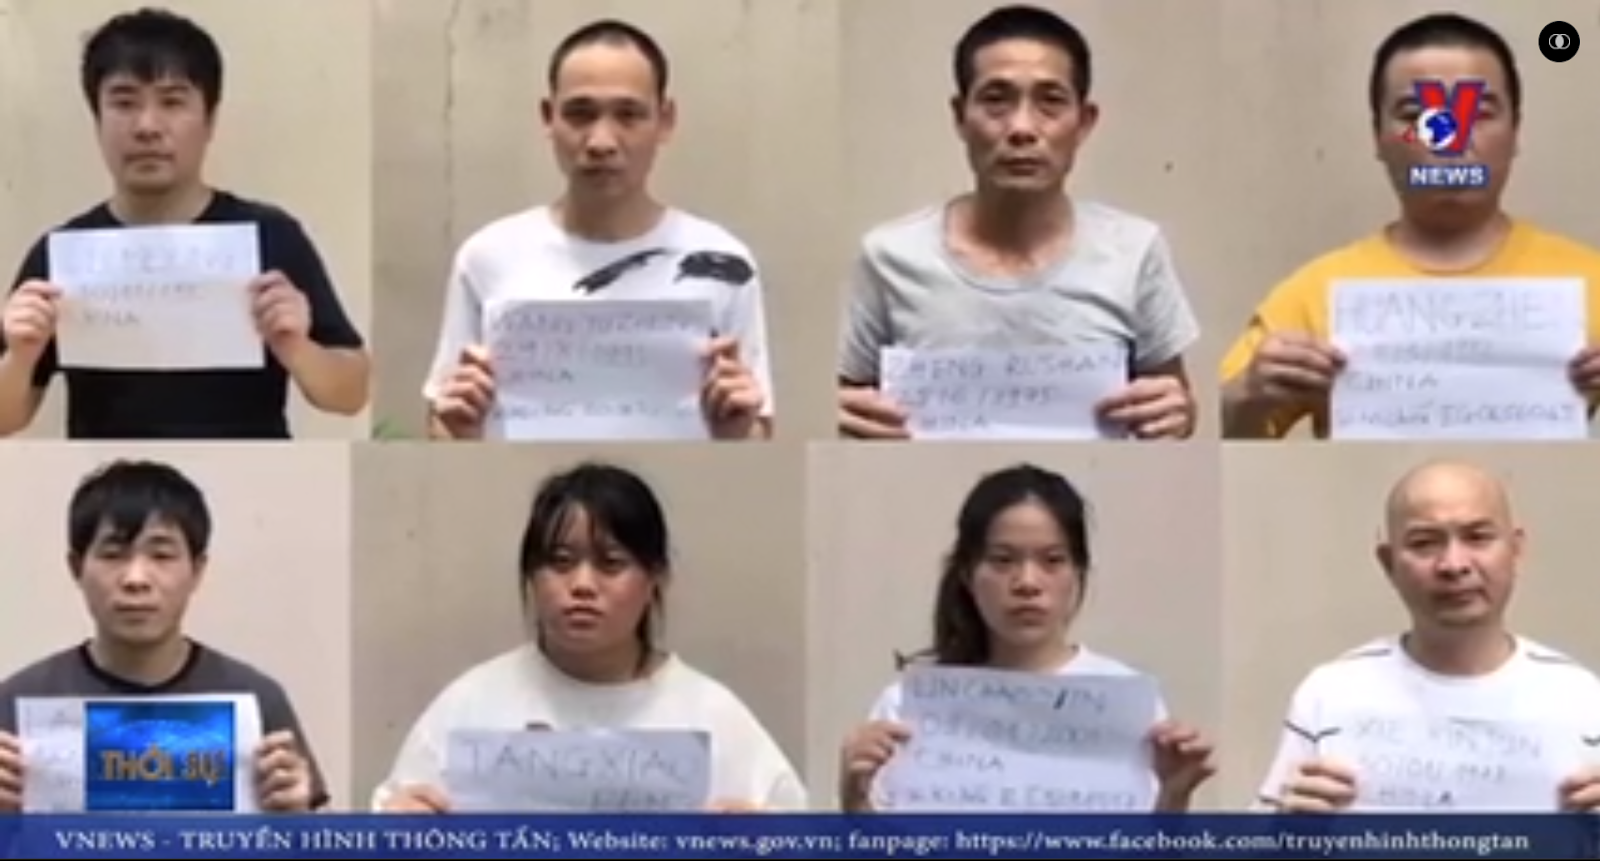 Gần 30 người TQ không giấy tờ ở quận Bình Tân - Ảnh 3